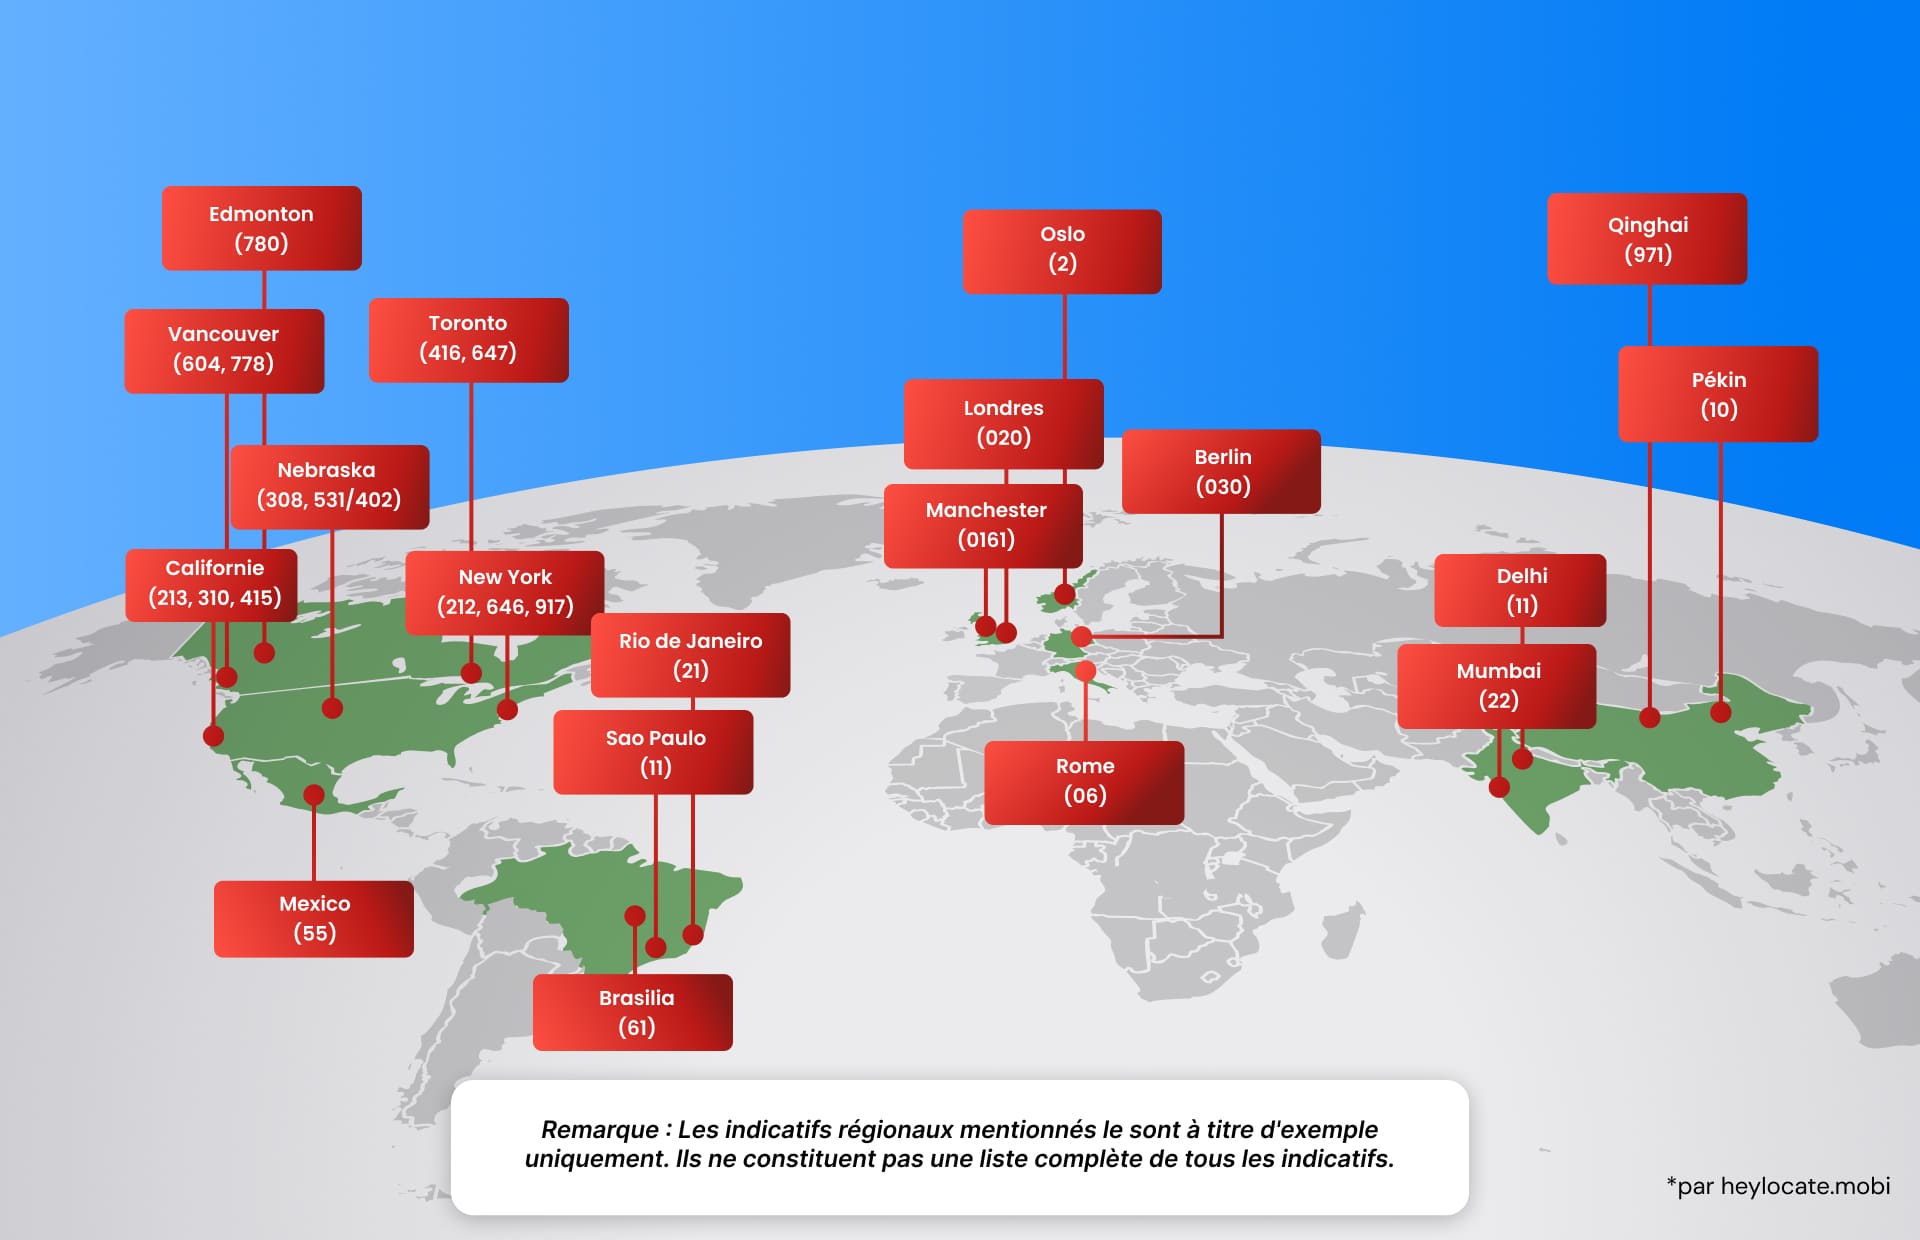 Carte du monde illustrée mettant en évidence les différents indicatifs de zone mondiaux pour les villes et les régions, expliquant le concept d'un indicatif de zone